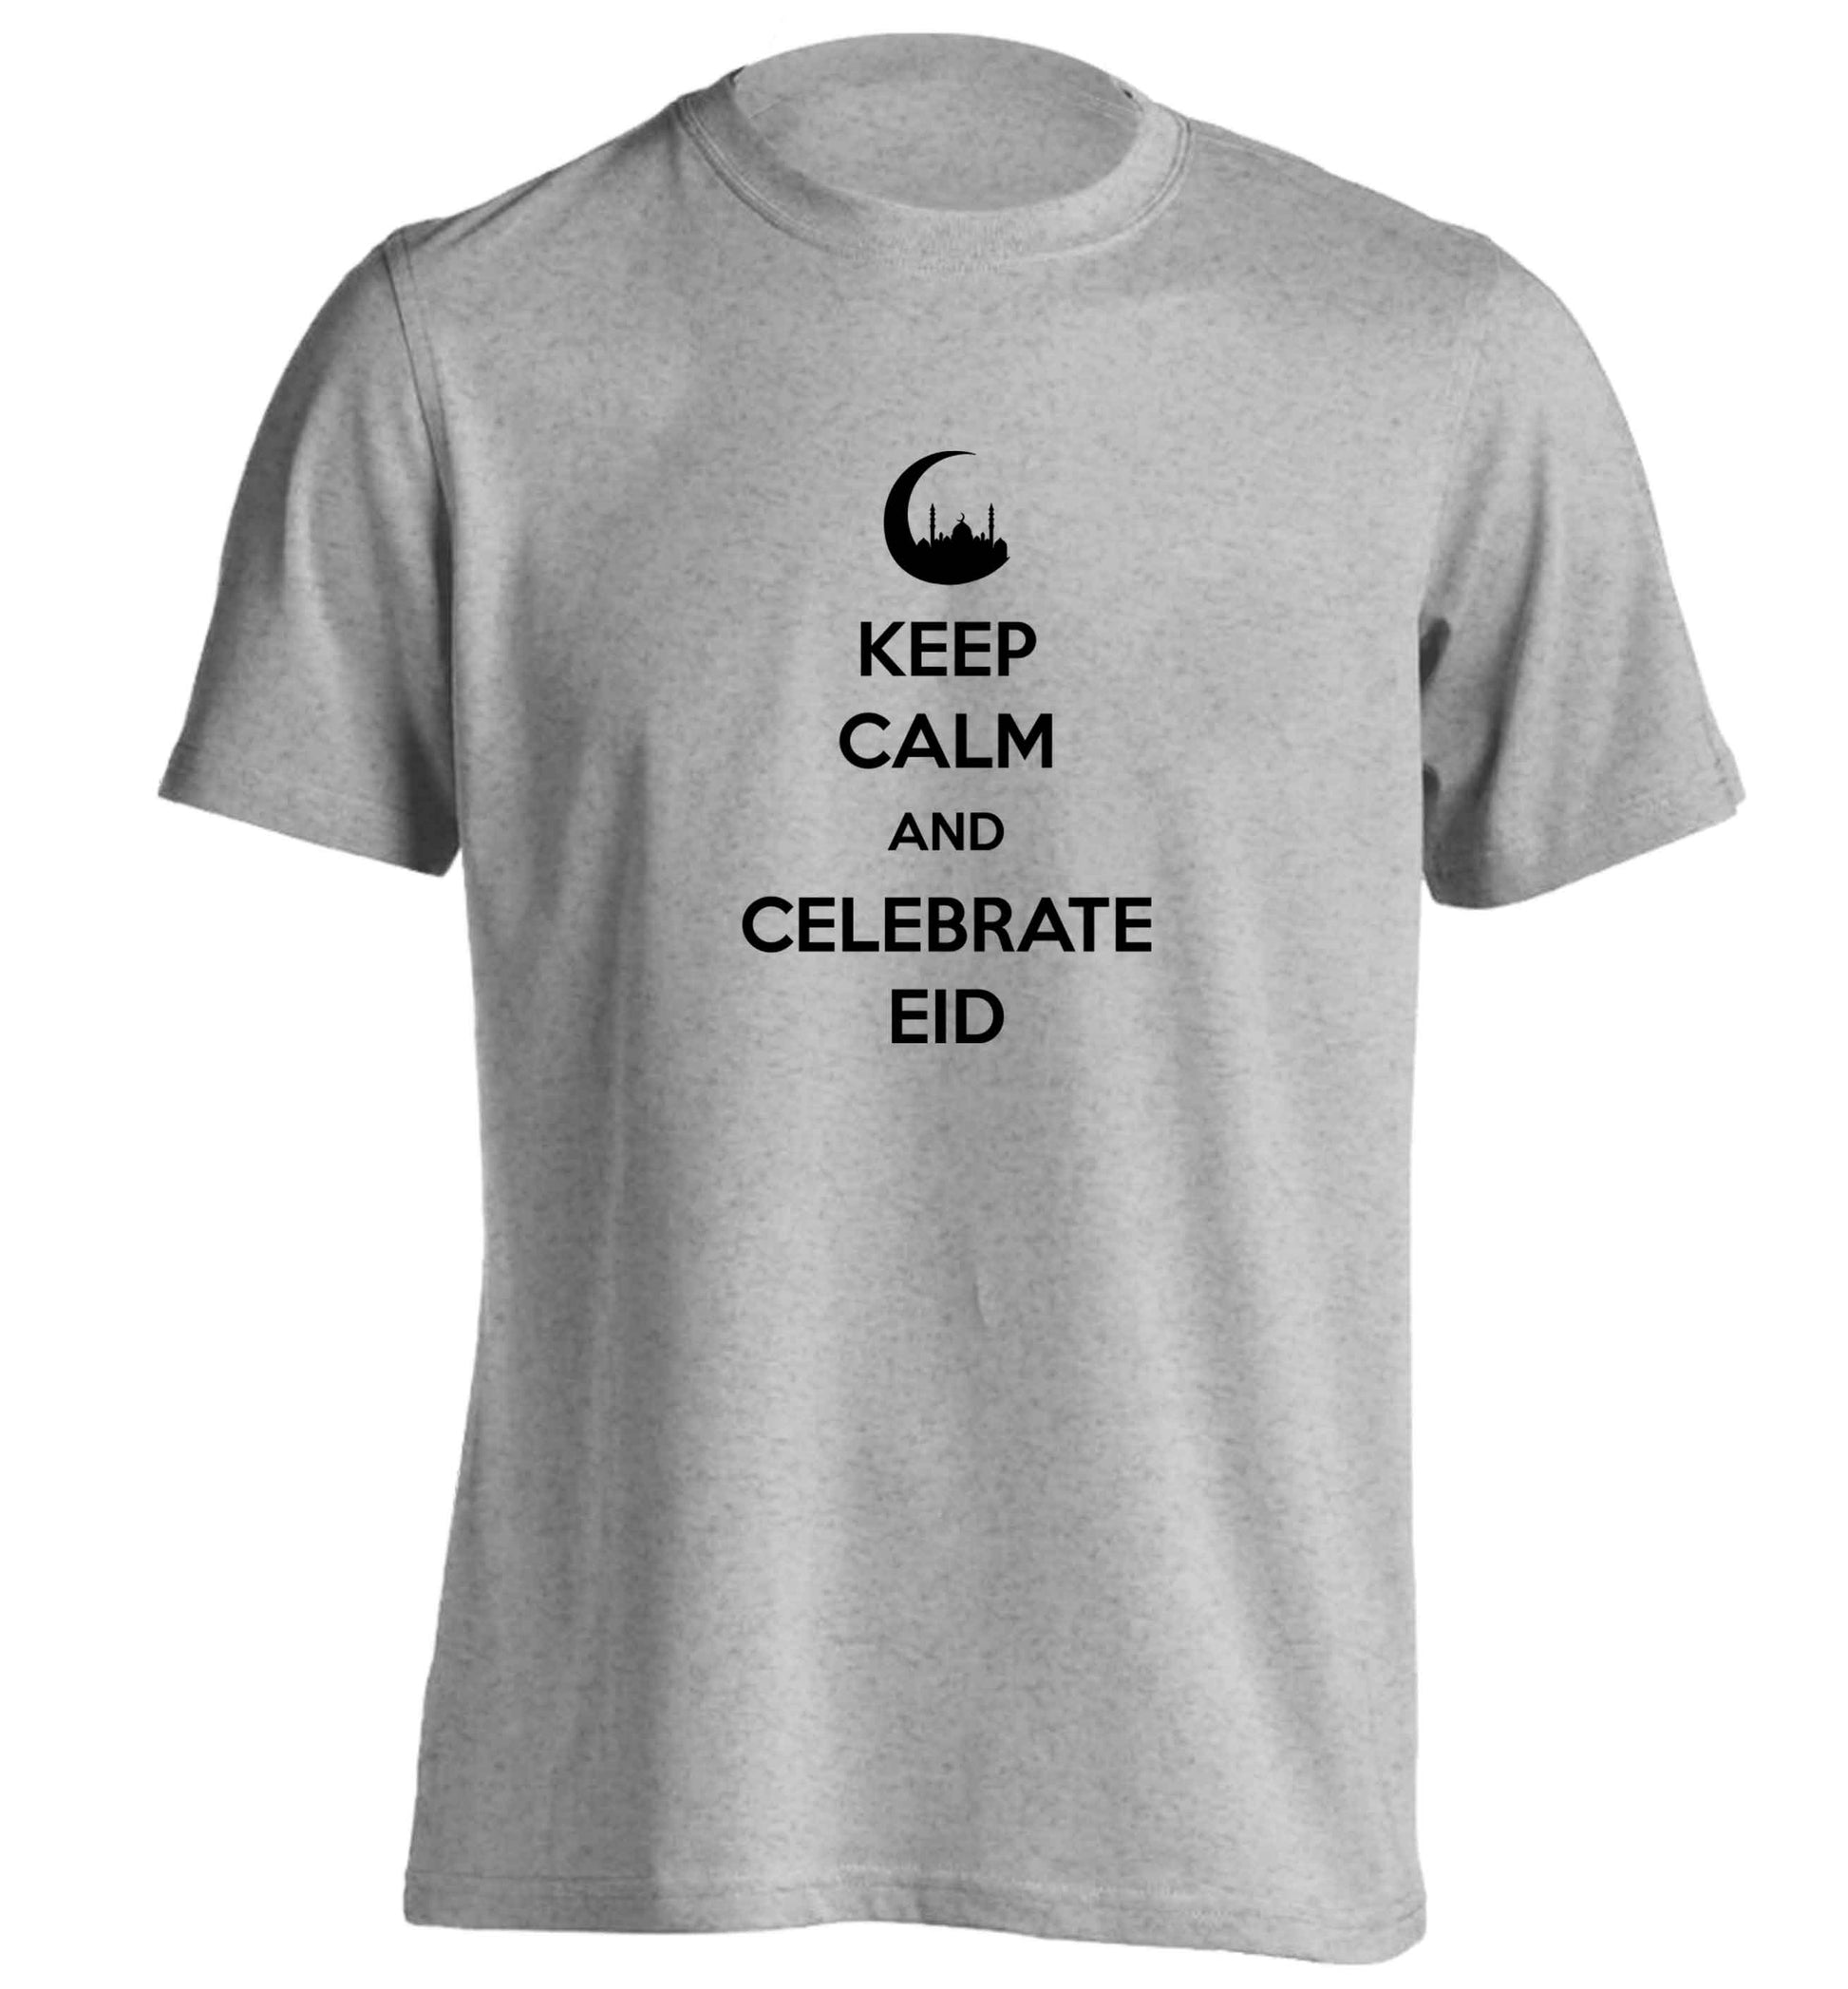 Keep calm and celebrate Eid adults unisex grey Tshirt 2XL